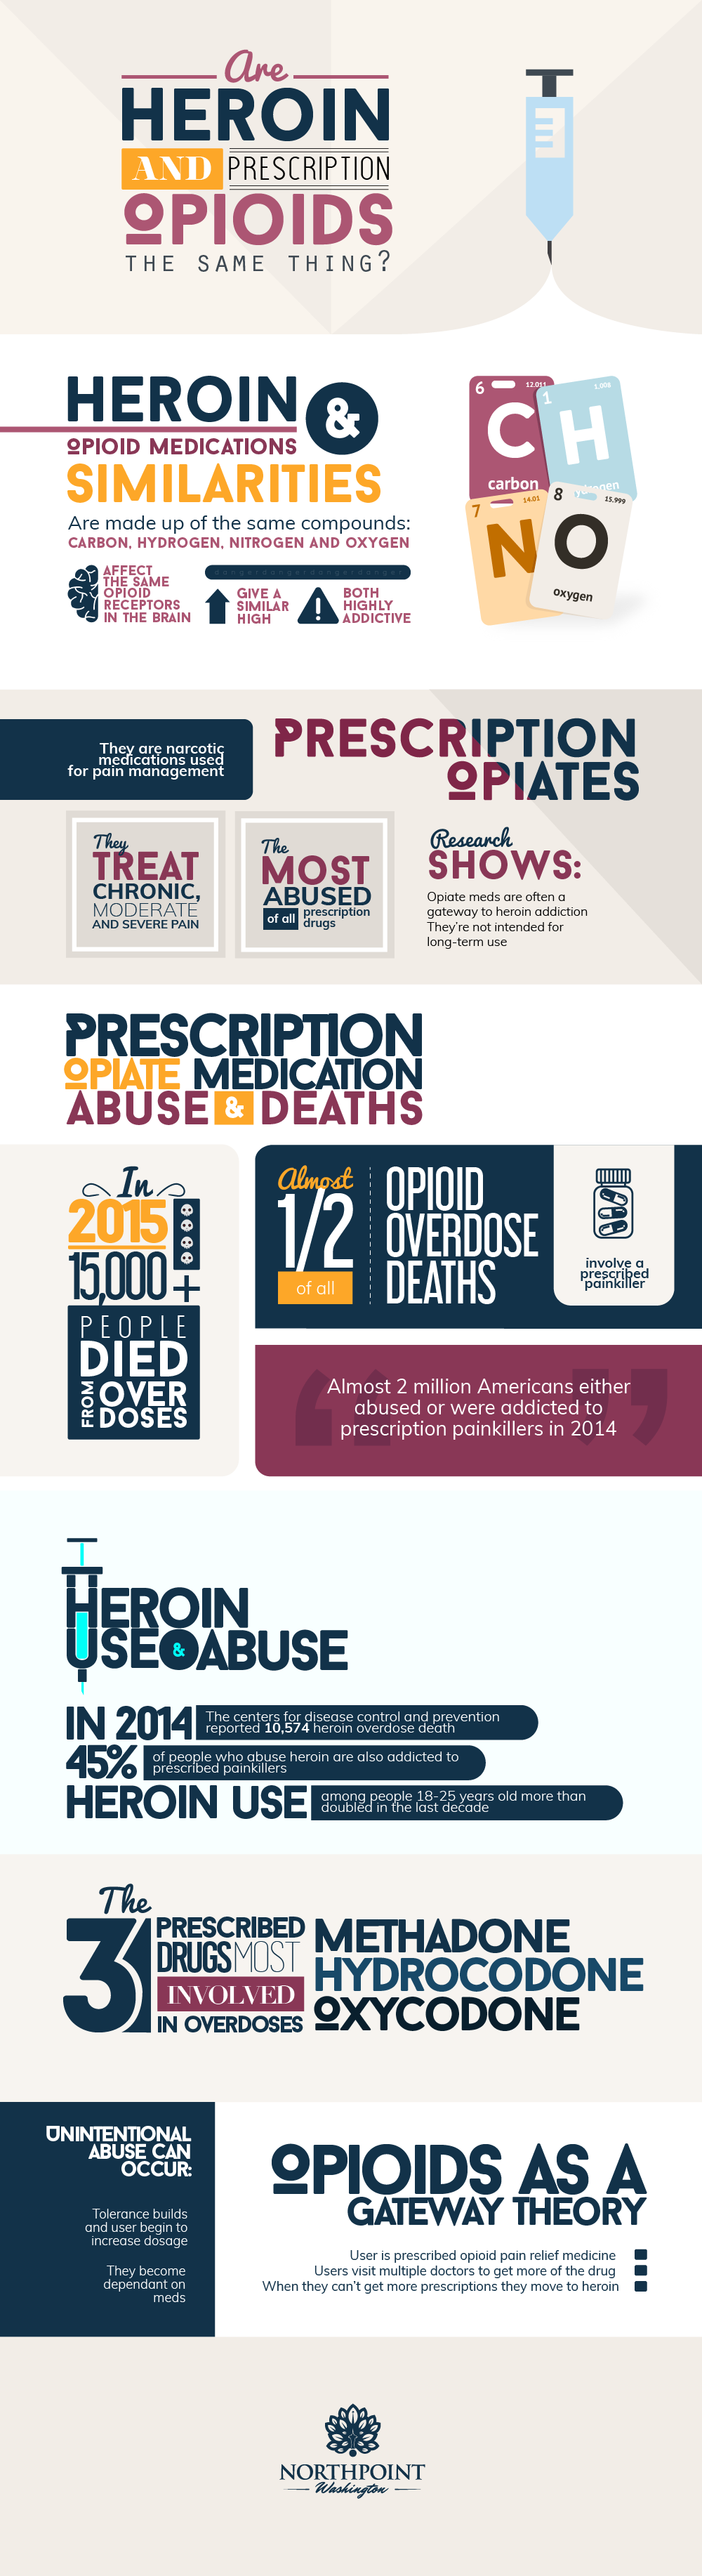 mpwheroin-vs-prescription-opioids